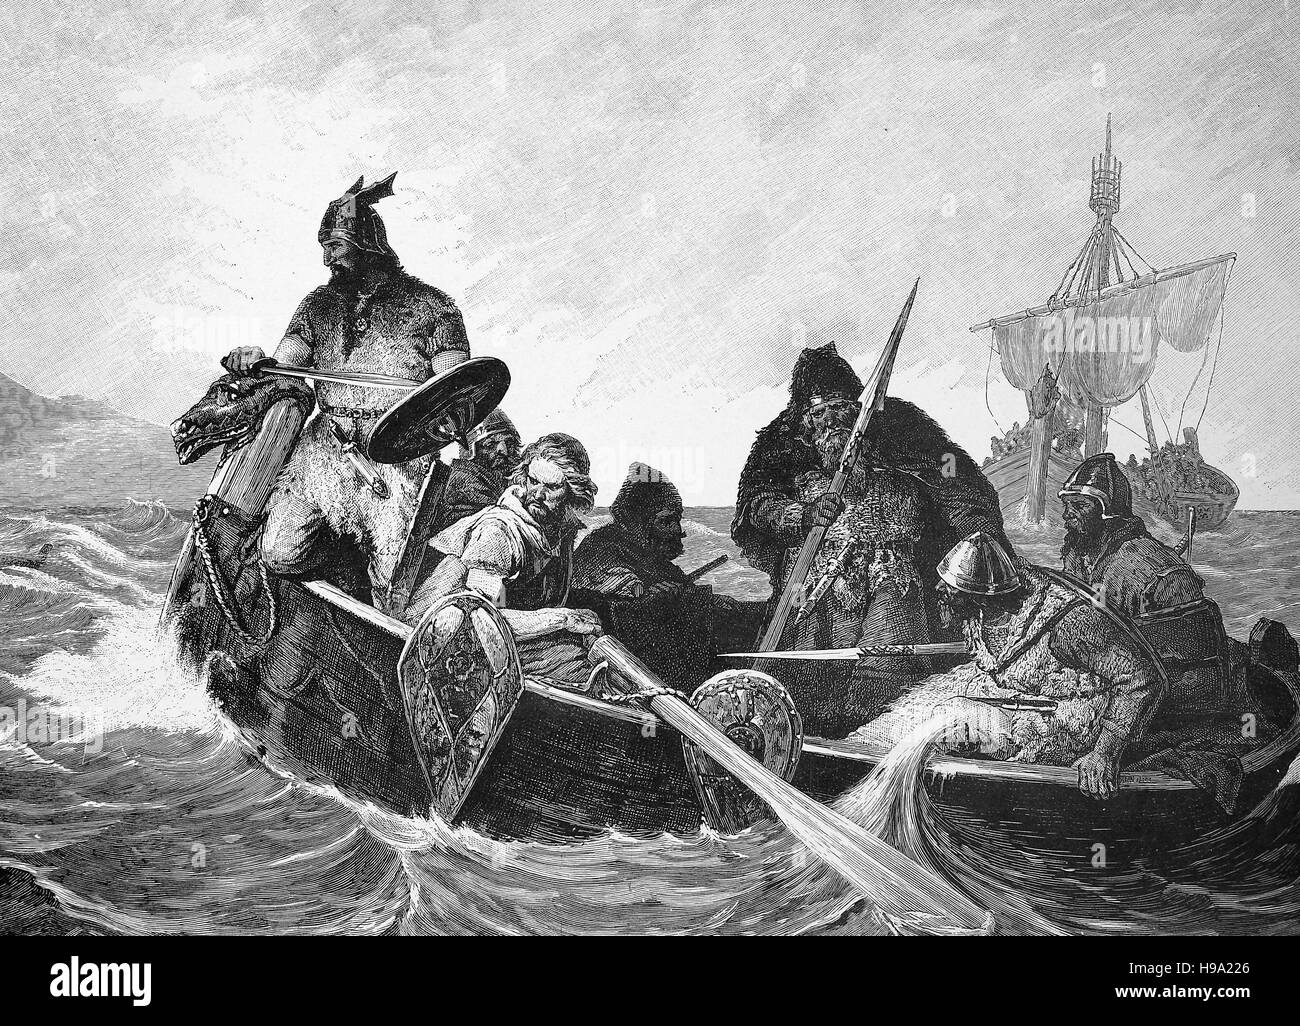 Normands avec un bateau, illustration historique Banque D'Images